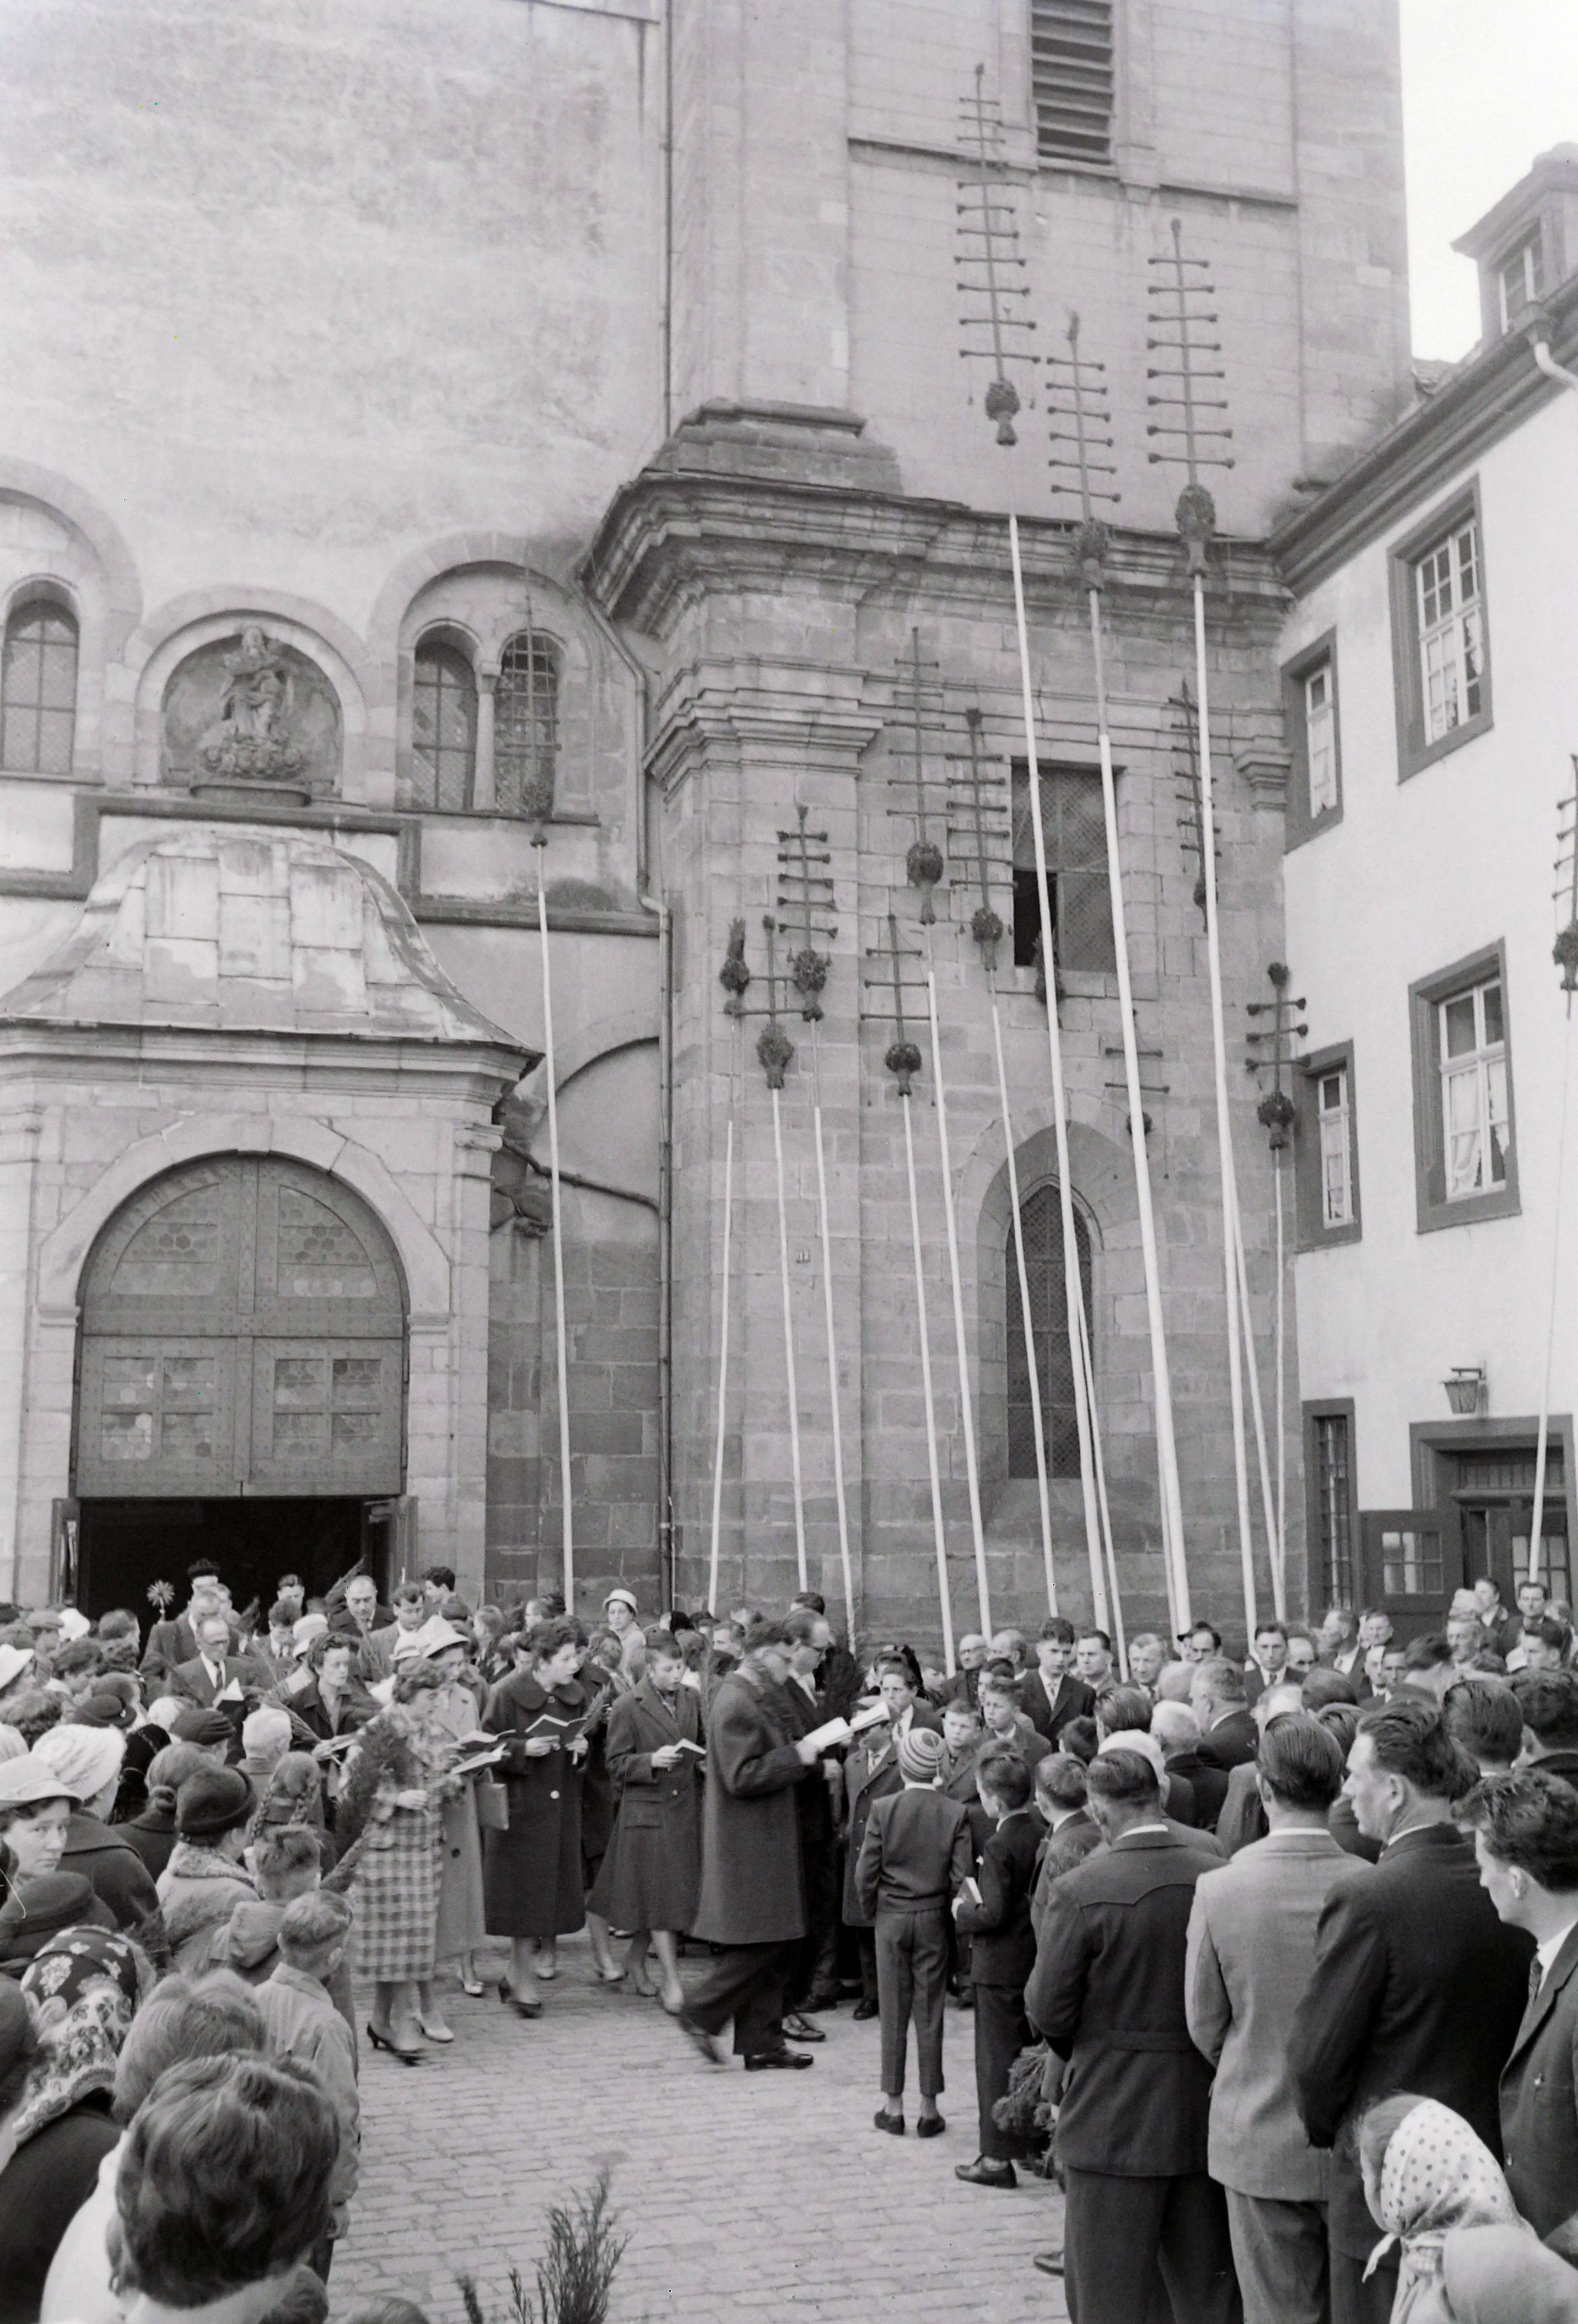 Die langen Palm-Stangen lehnen an der Aussenfassade der Kirche, ein Chor singt